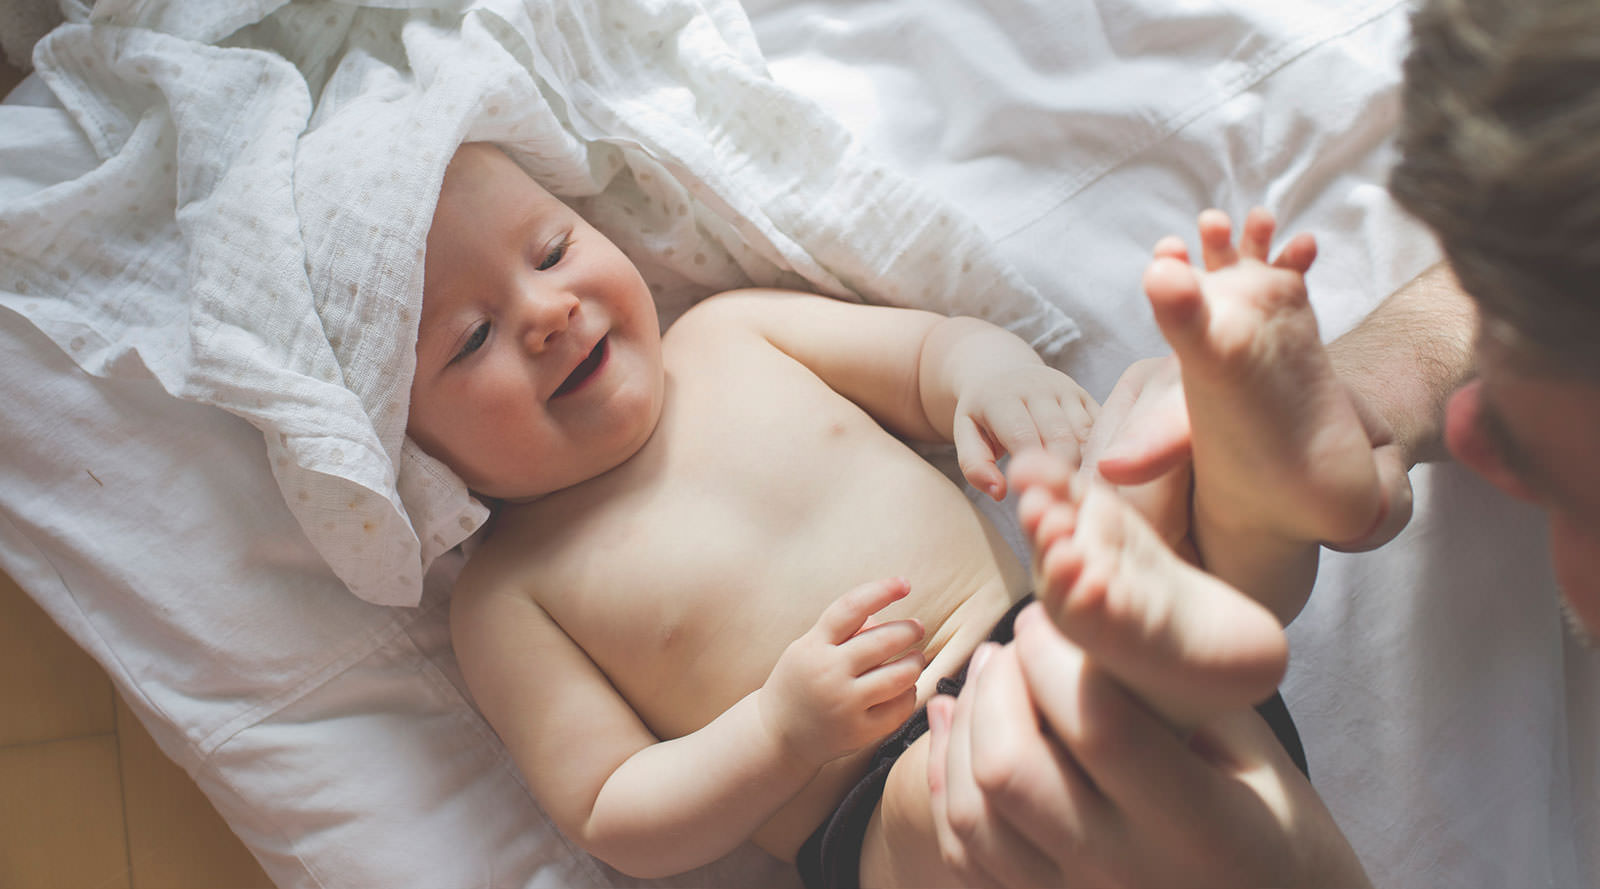 تصویر رشد نوزاد در 4 هفتگی : نوزاد و کشف اندام های خود